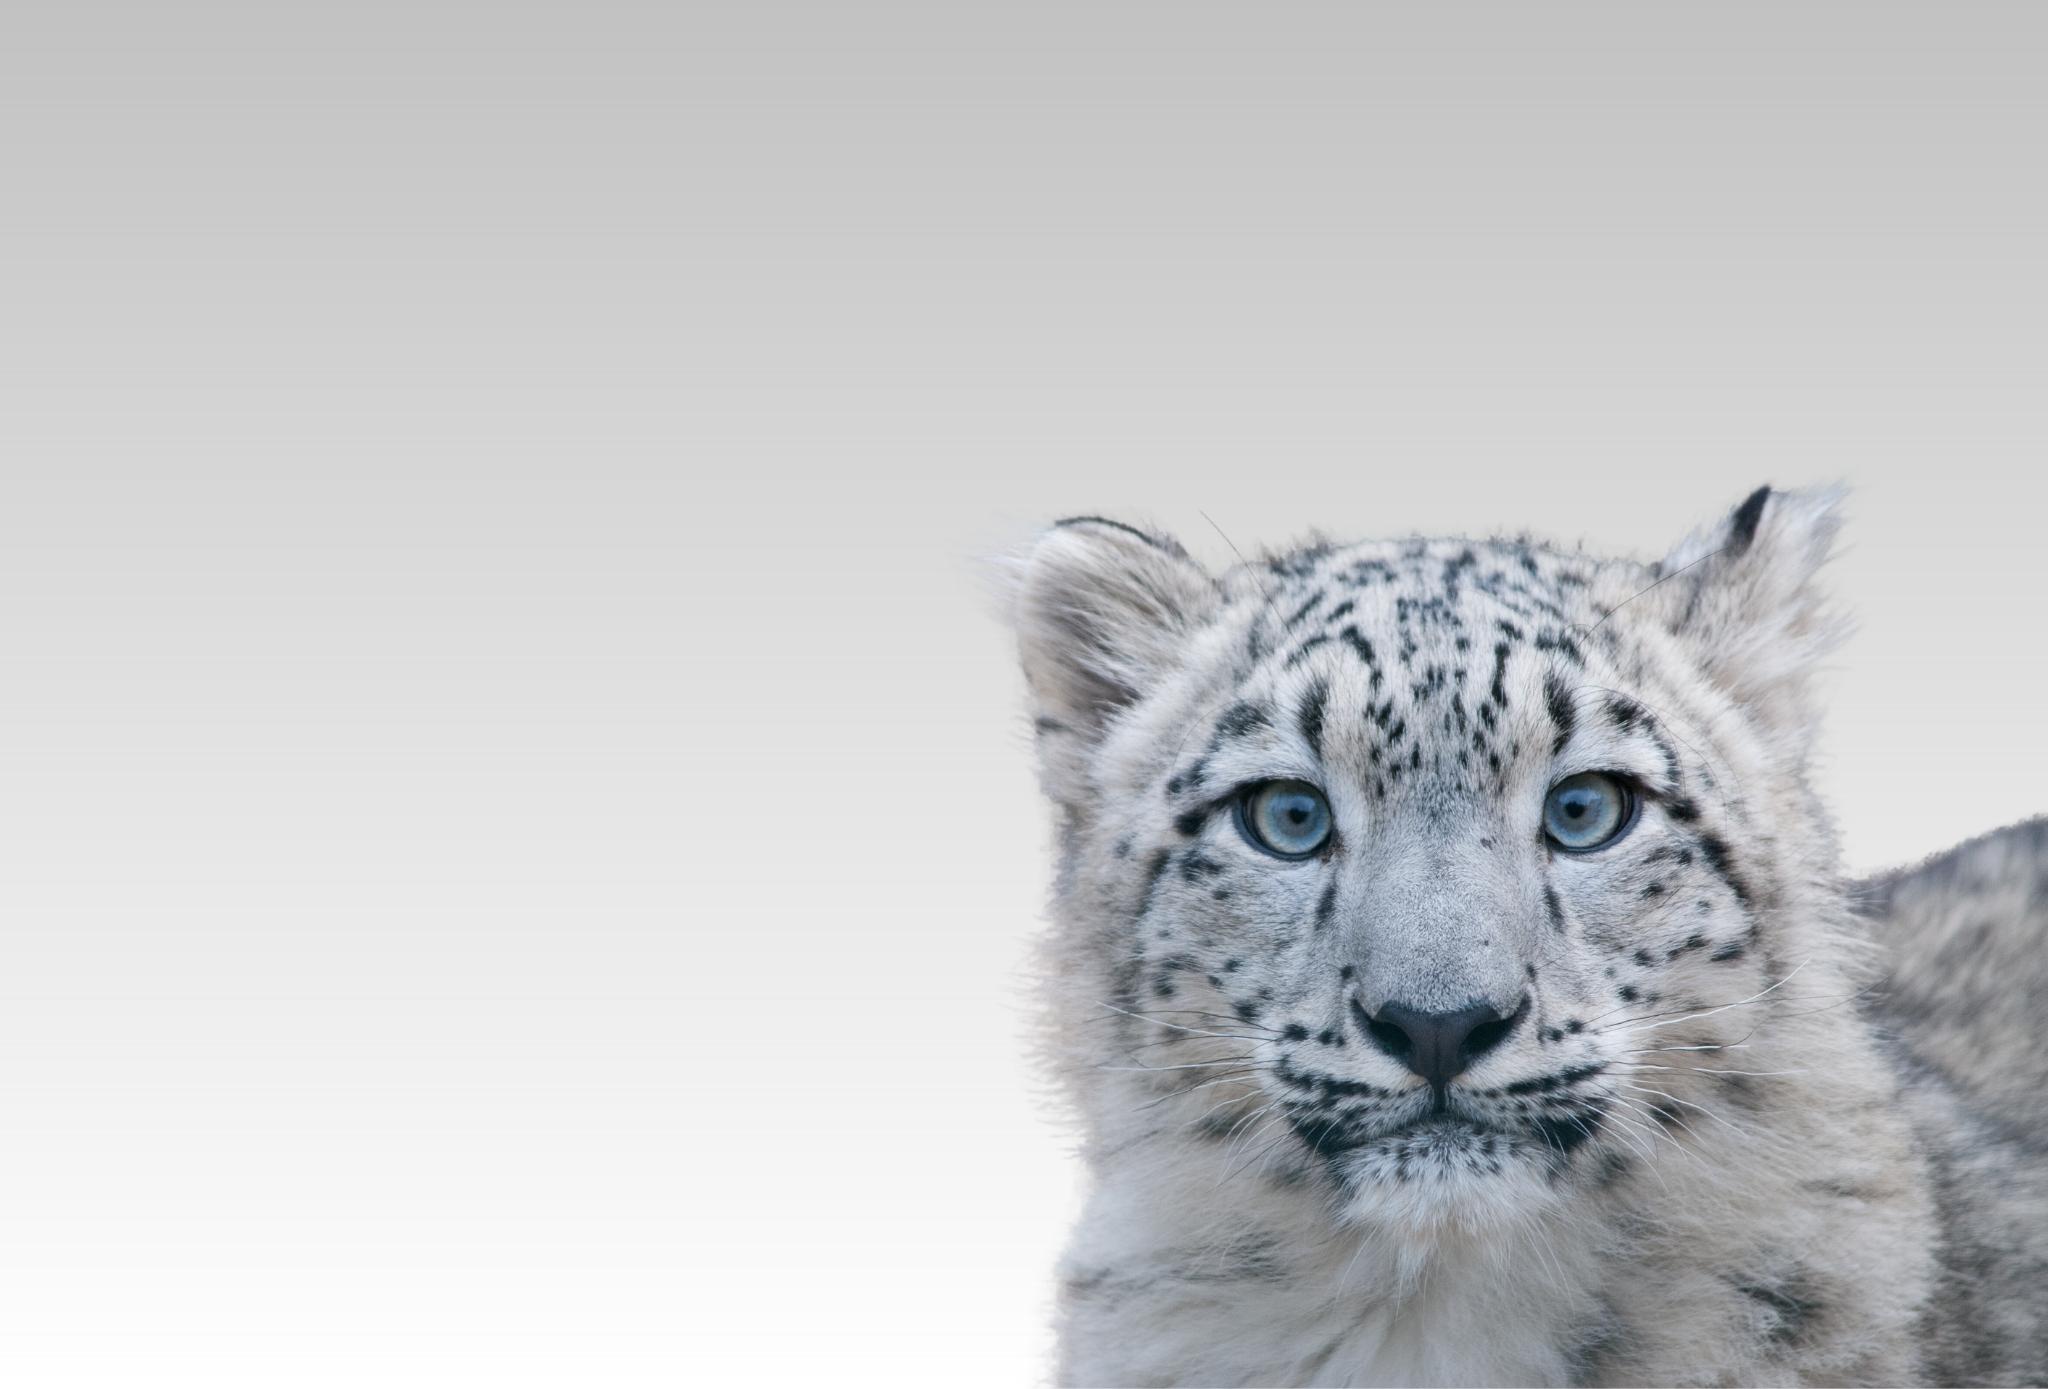 Close up portrait of a snow leopard cub